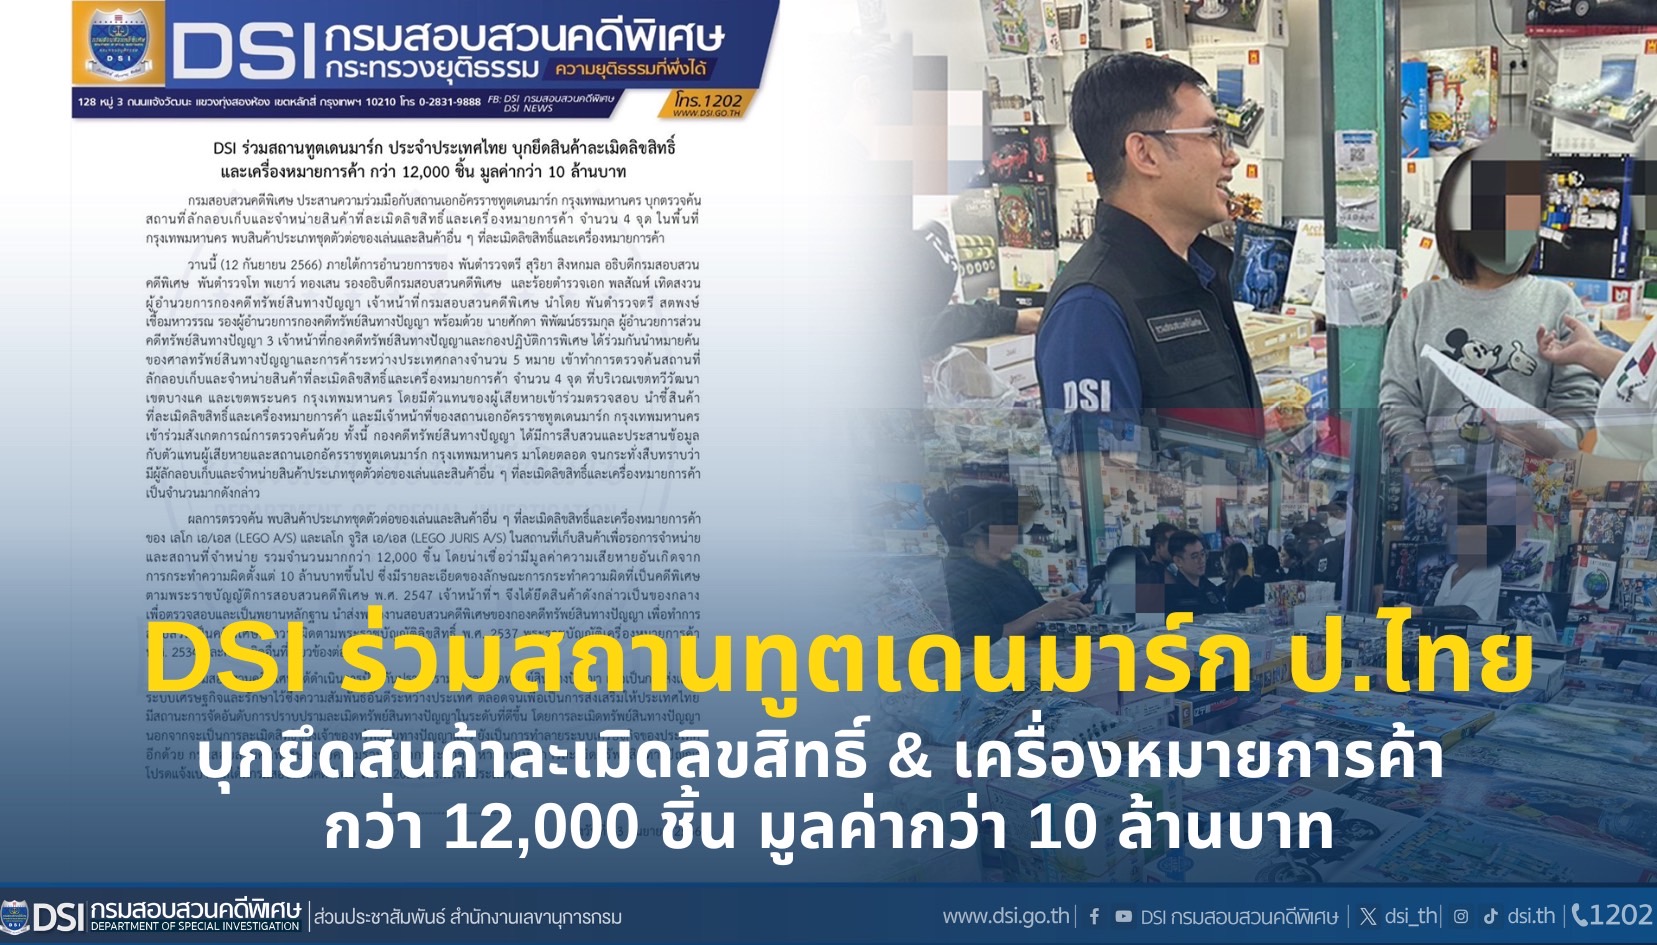 DSI ร่วมสถานทูตเดนมาร์ก ประจำประเทศไทย บุกยึดสินค้าละเมิดลิขสิทธิ์ และเครื่องหมายการค้า กว่า 12,000 ชิ้น มูลค่ากว่า 10 ล้านบาท